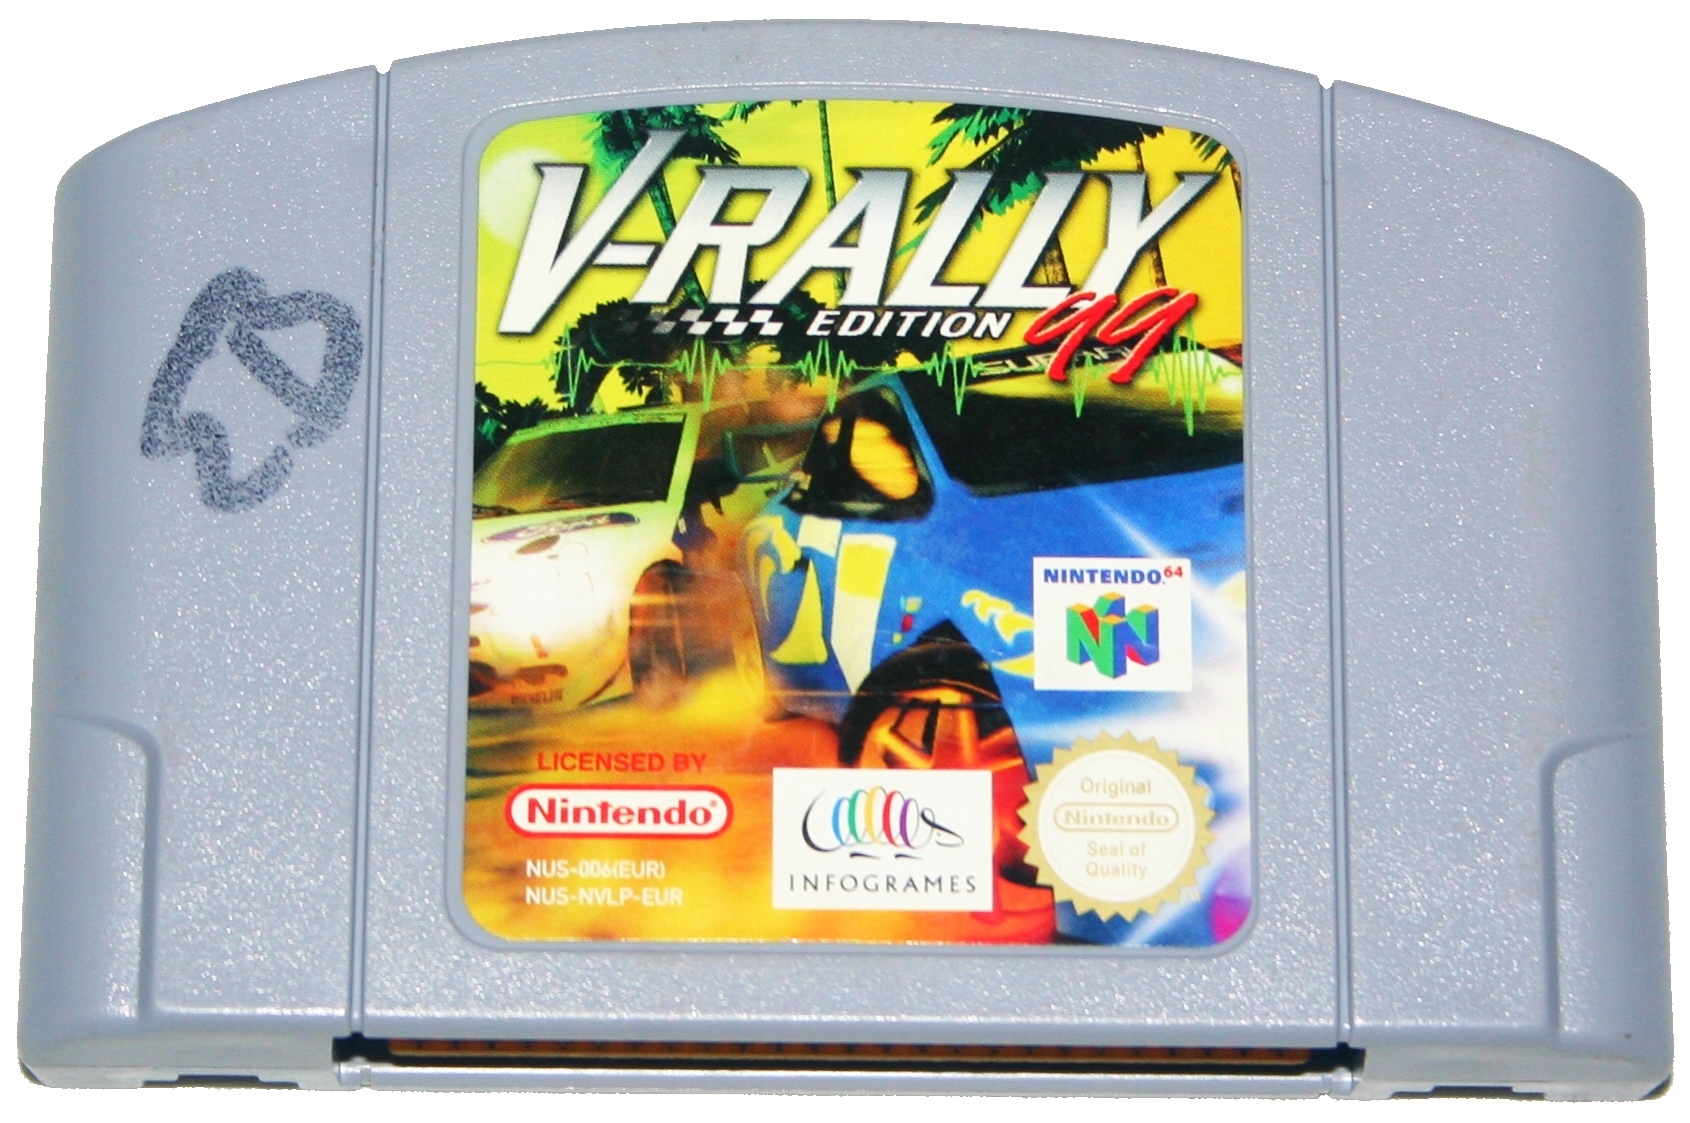 V-Rally Edition 99 - Nintendo 64, N64.